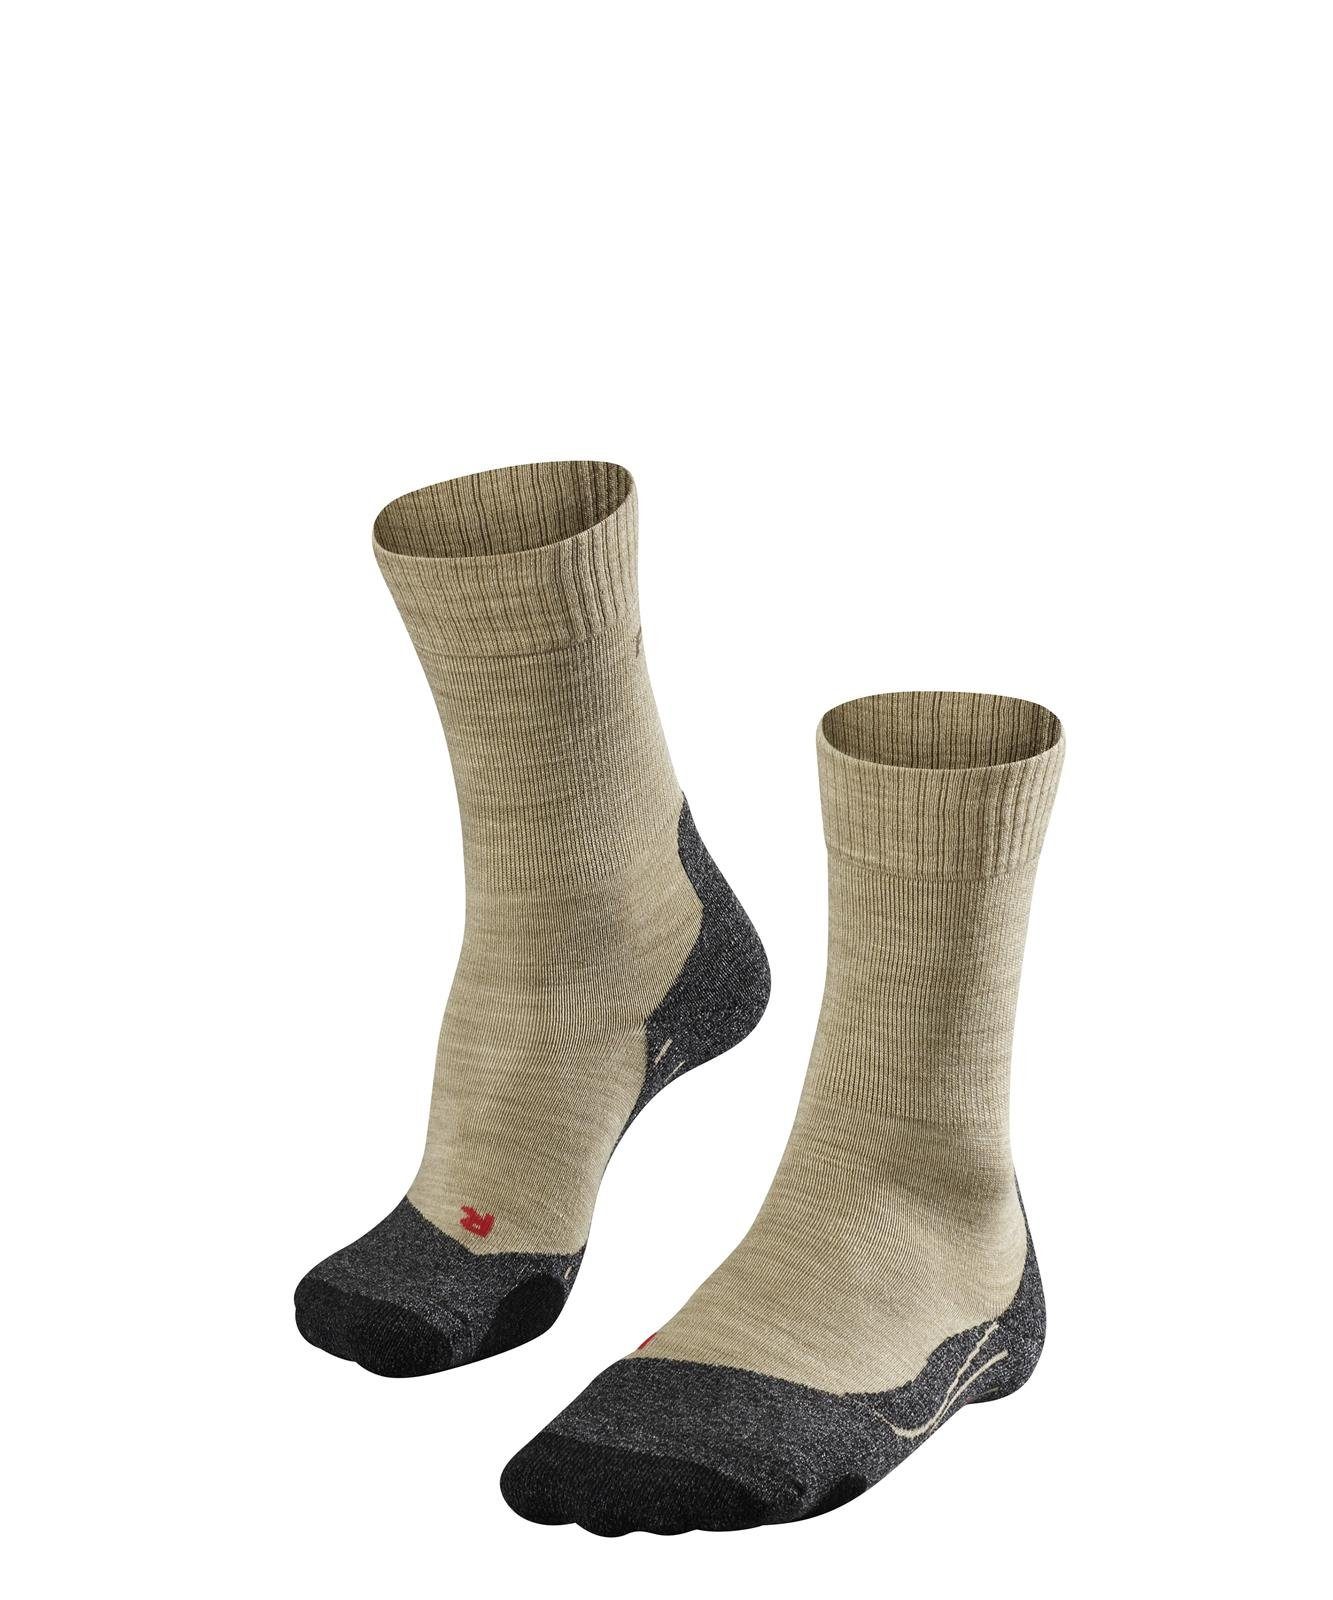 FALKE Sportsocken Herren Polsterung (4100) Socken Sand - Socken Trekking TK2